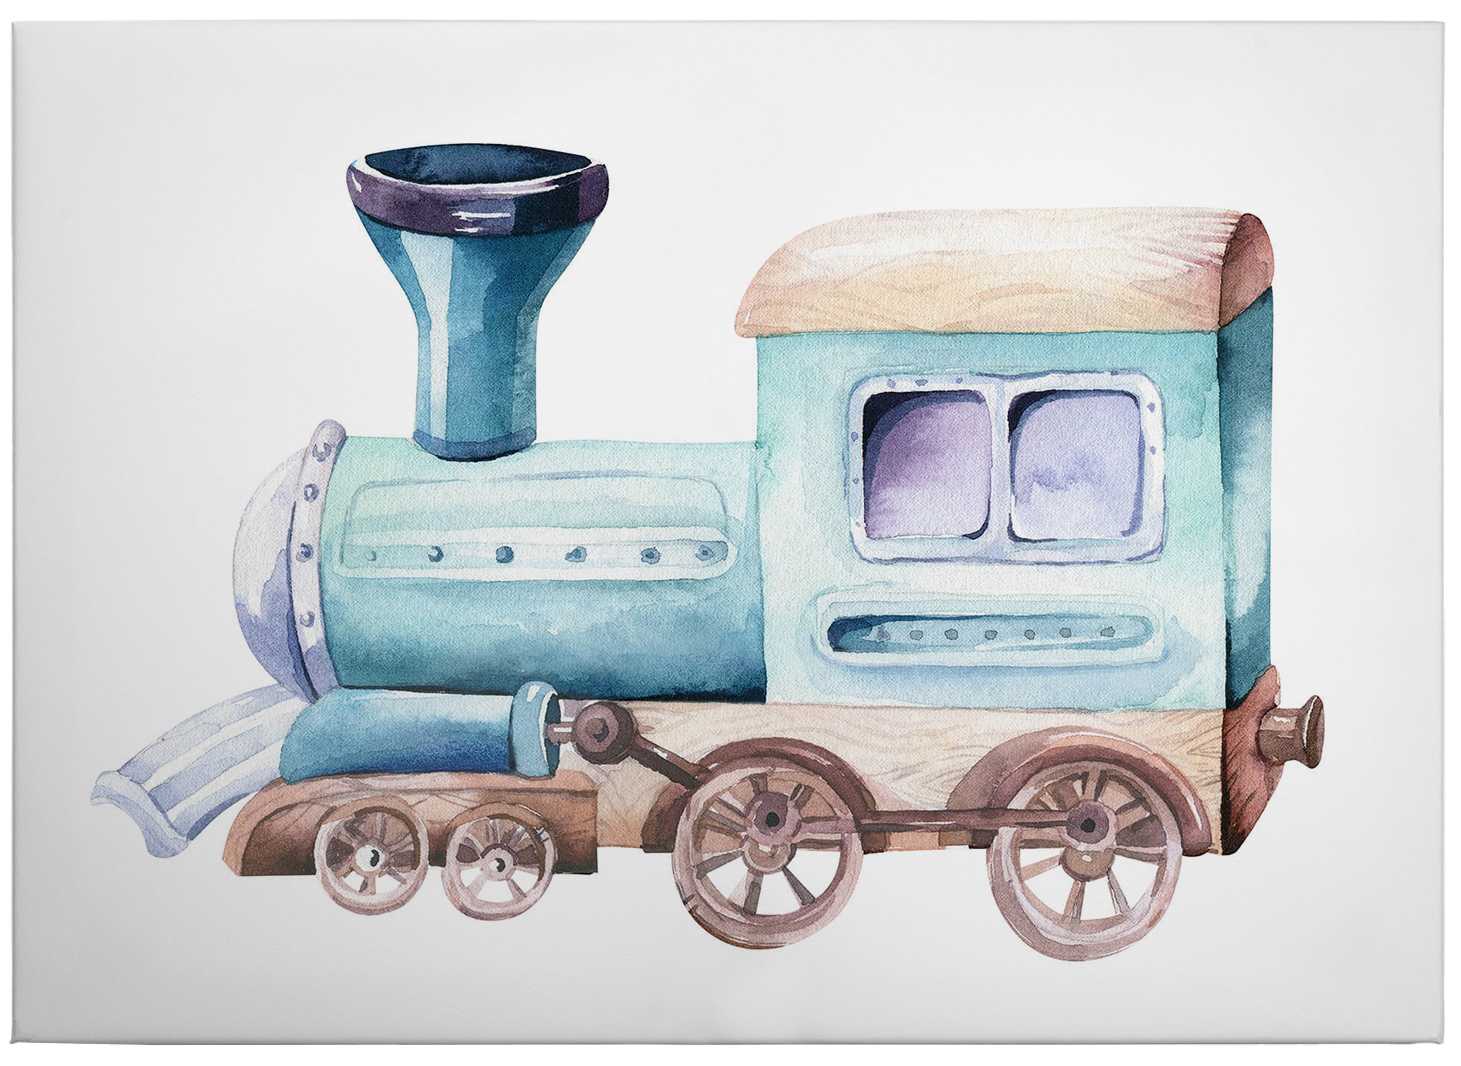             Canvas print locomotive watercolour by kvilis – coloured
        